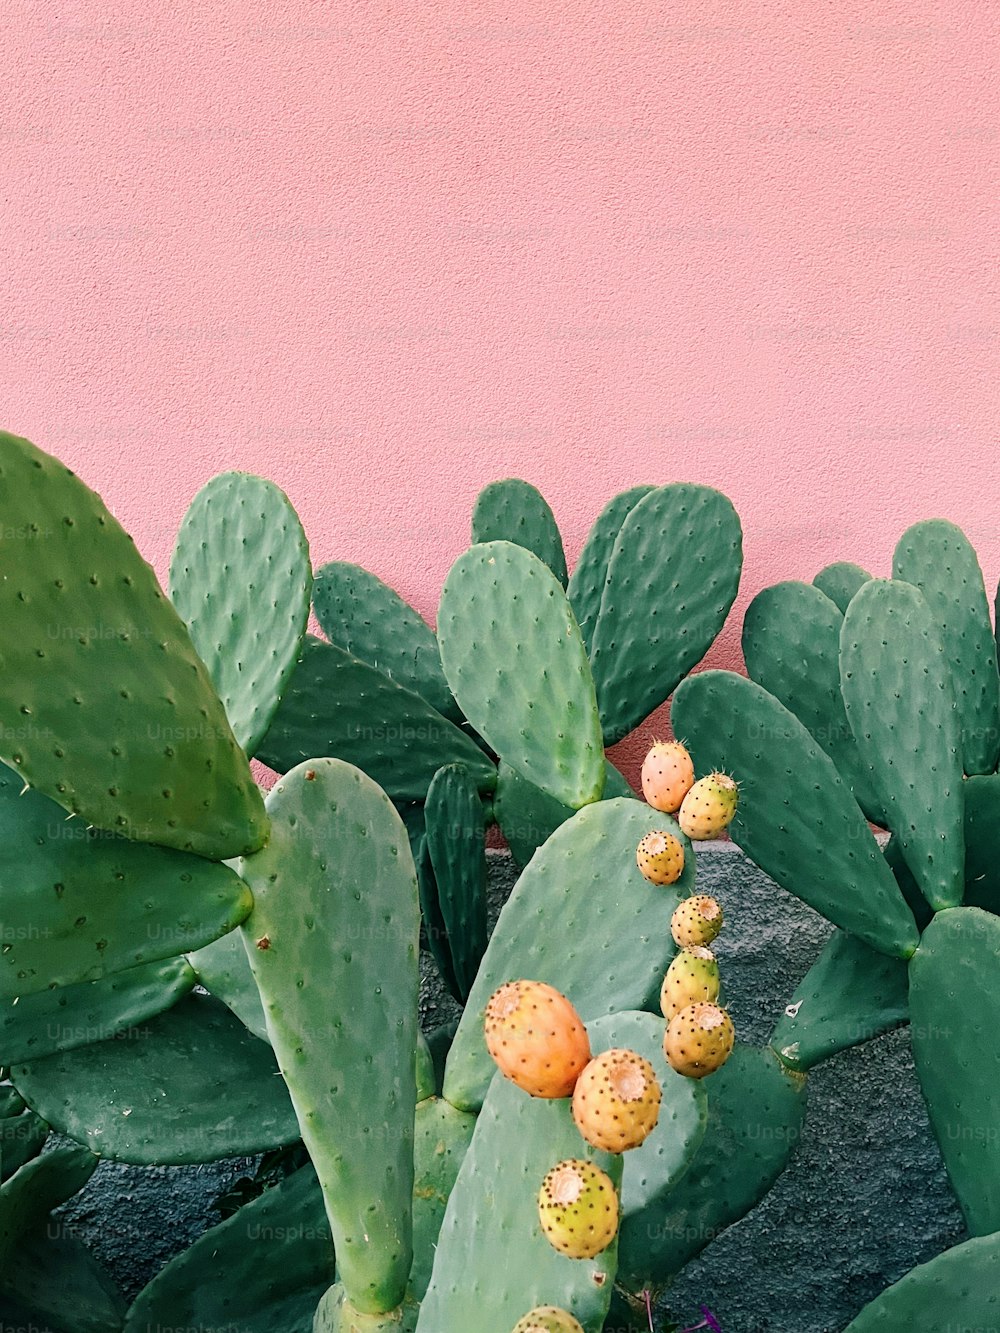 Un grupo de plantas de cactus junto a una pared rosa